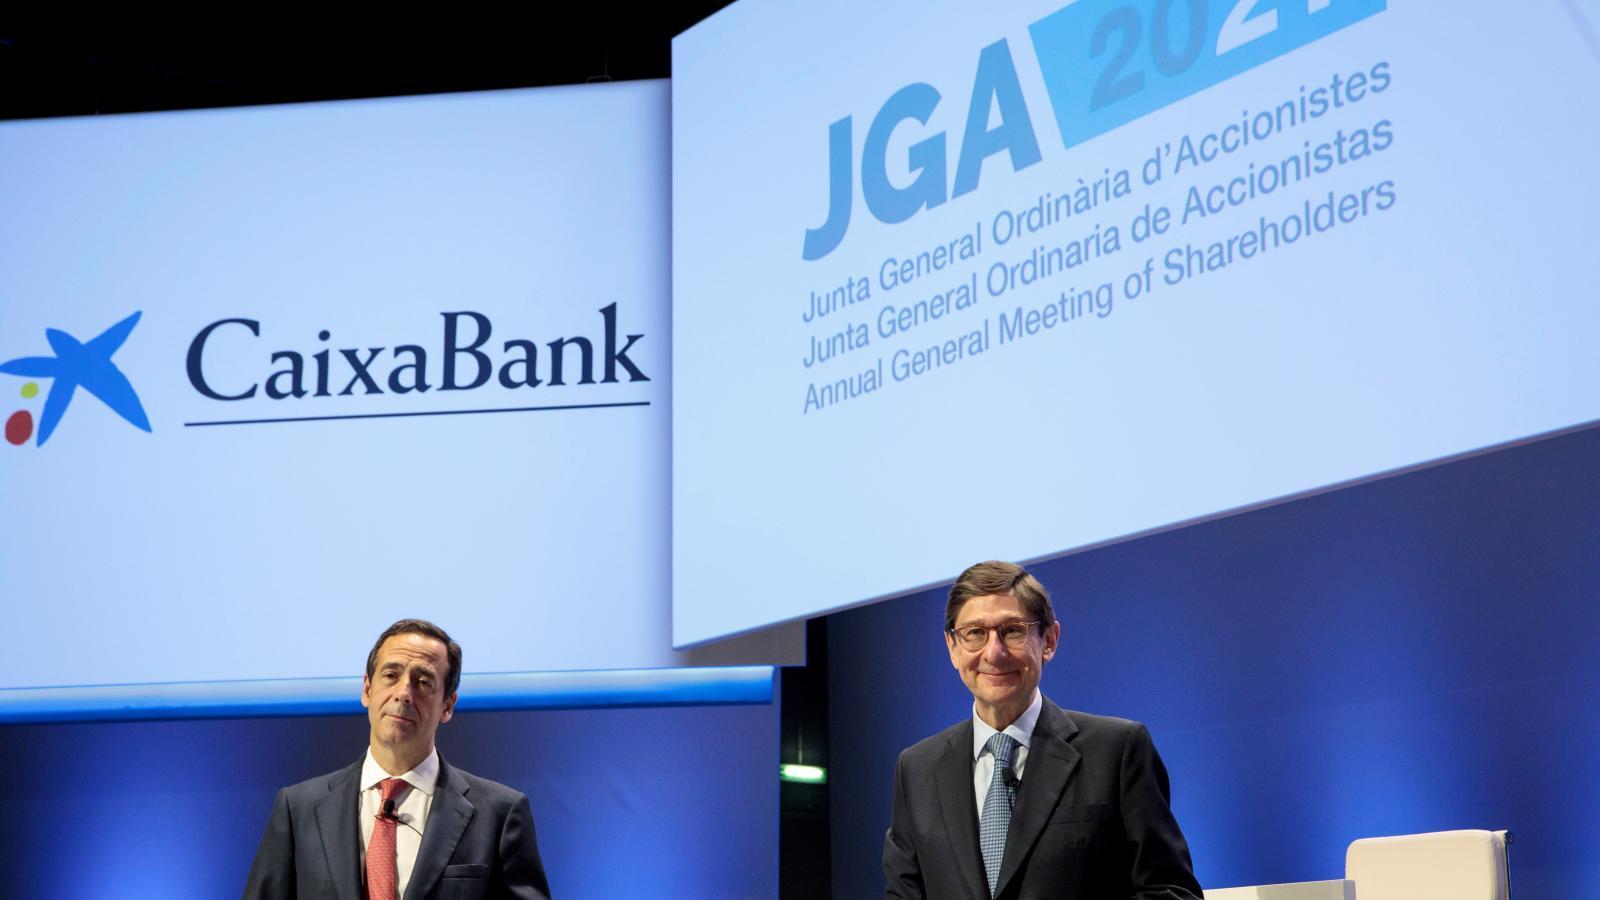 La fusión CaixaBank-Bankia llega a su final con la integración tecnológica